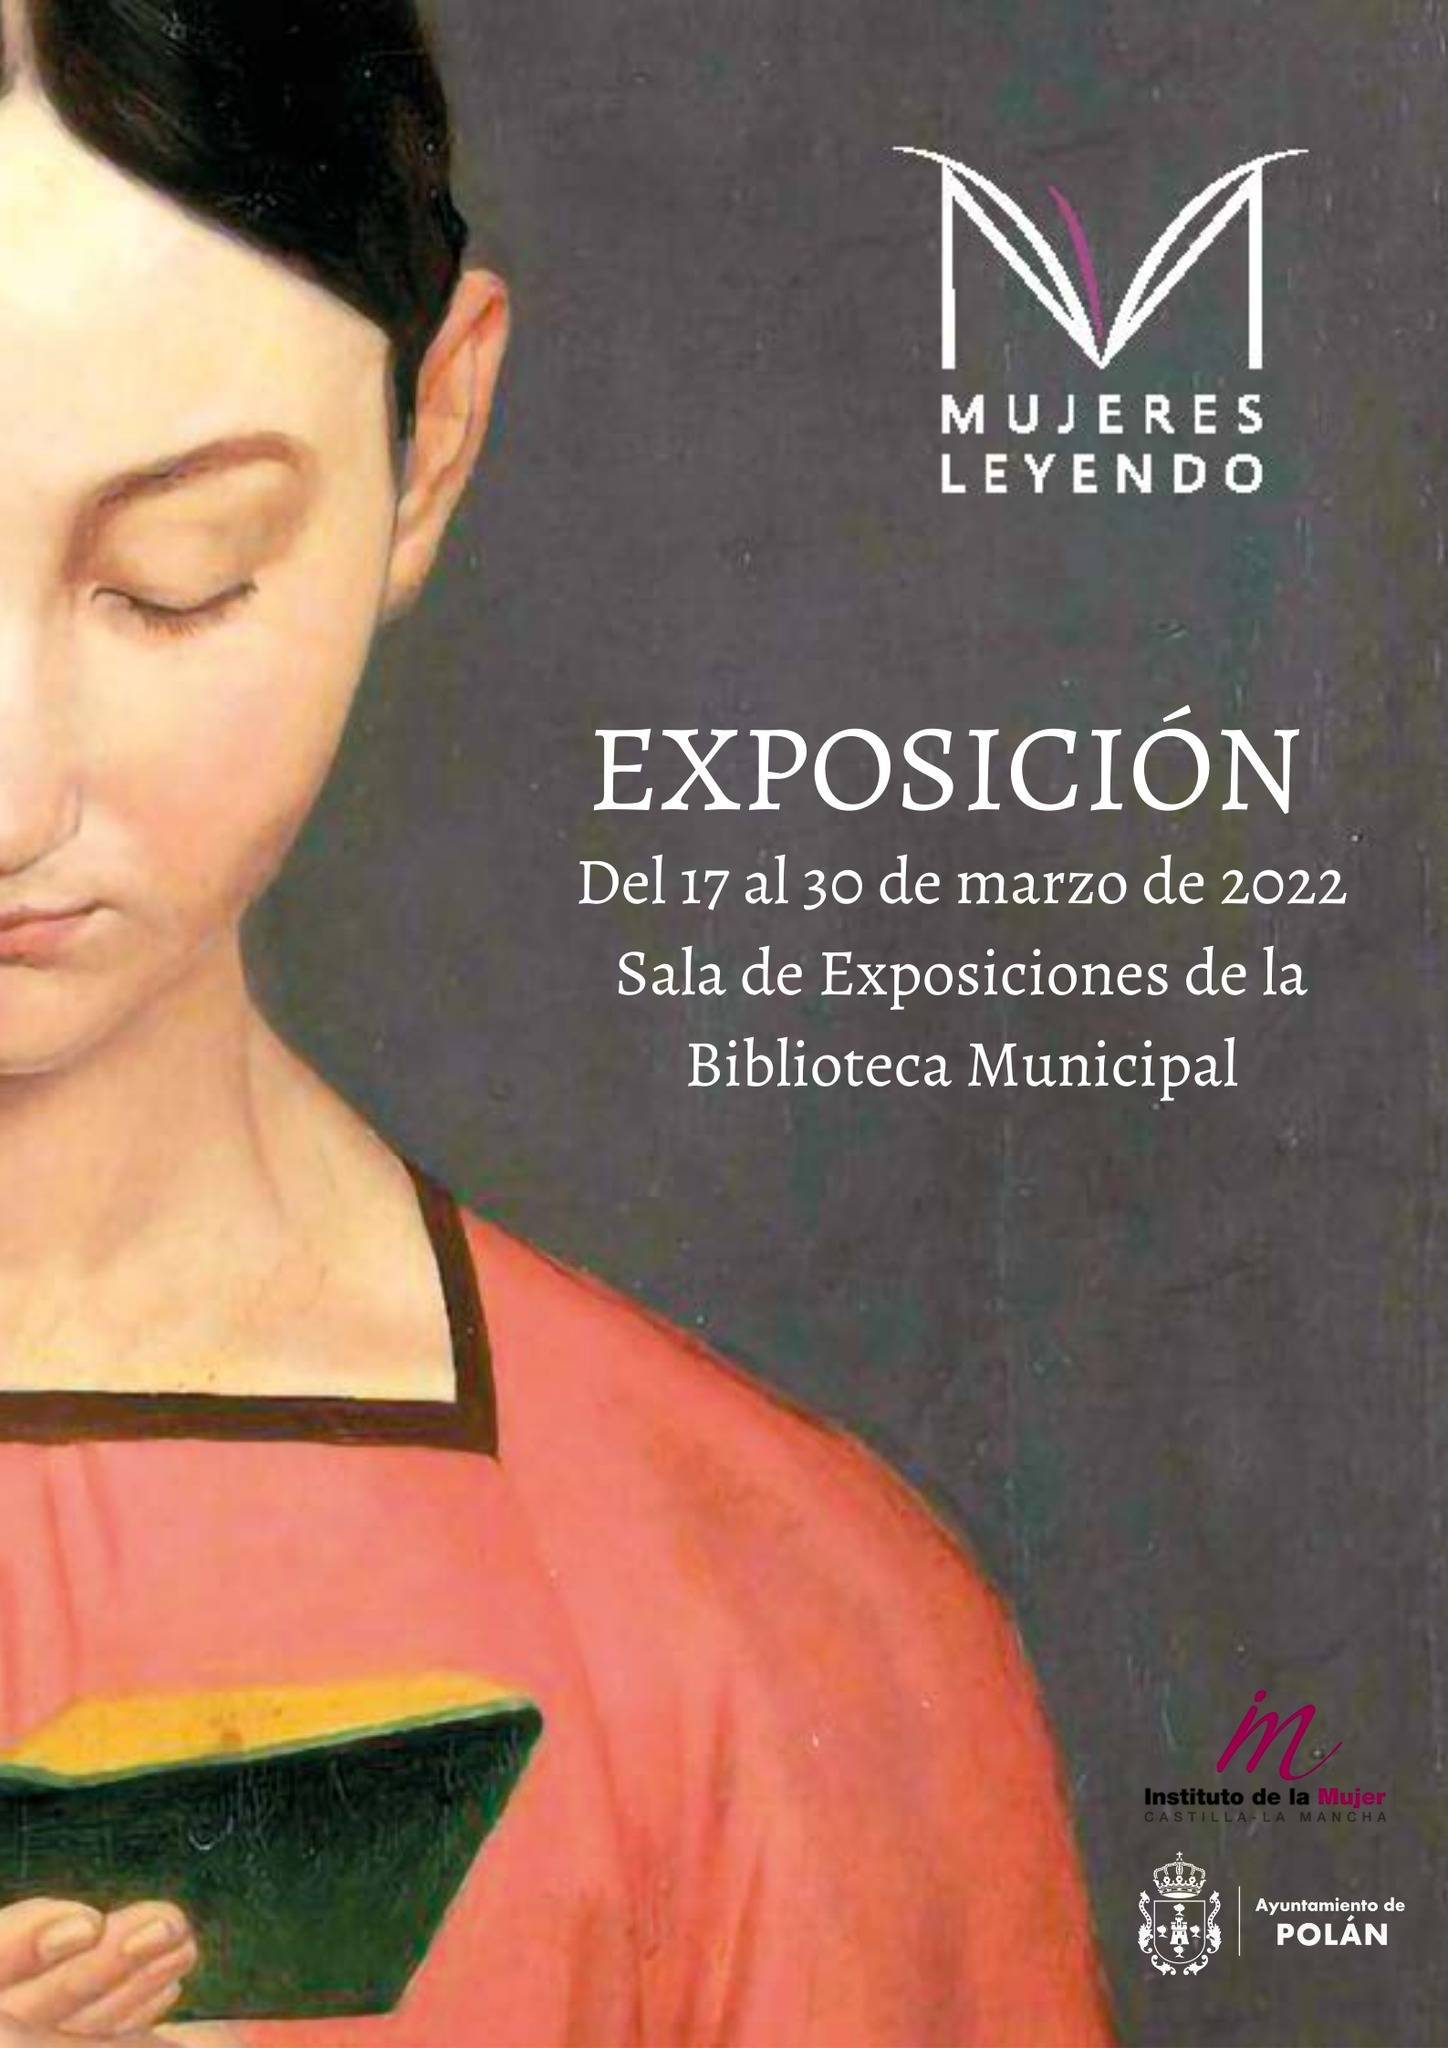 Exposición 'Mujeres leyendo' (2022) - Polán (Toledo)